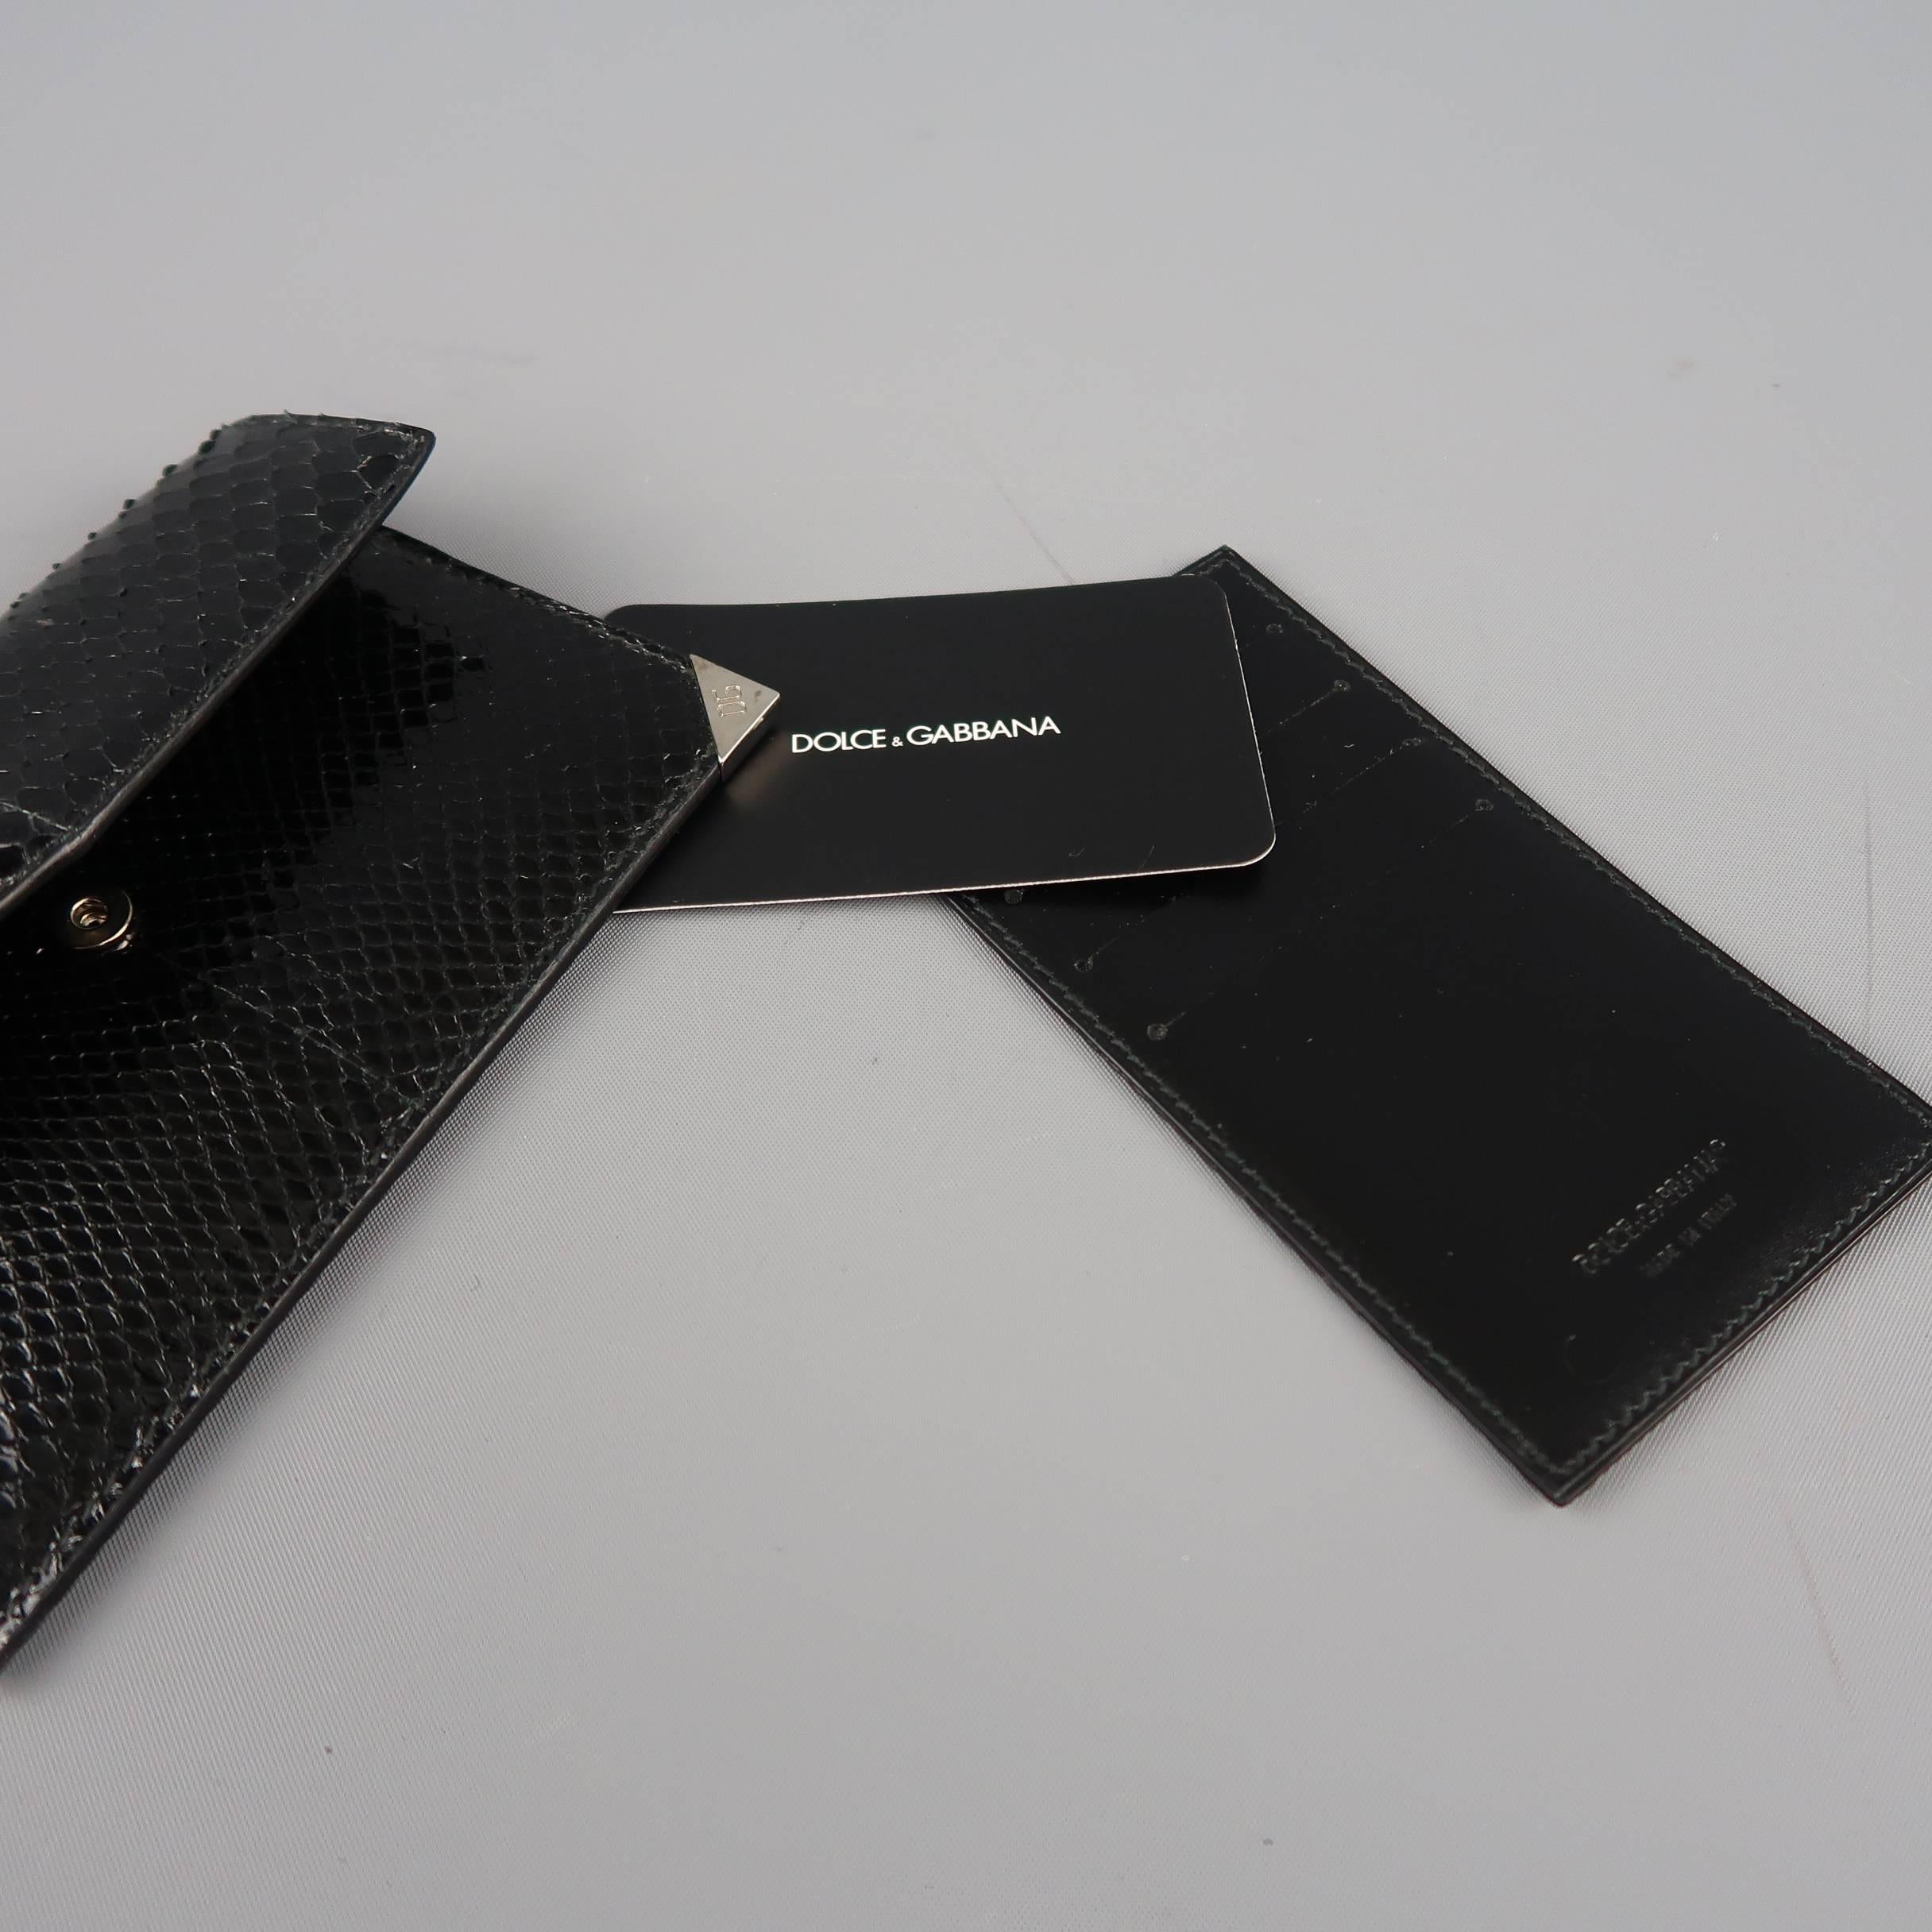 DOLCE & GABBANA Black Snake Skin Leather Card Holder Wallet 2